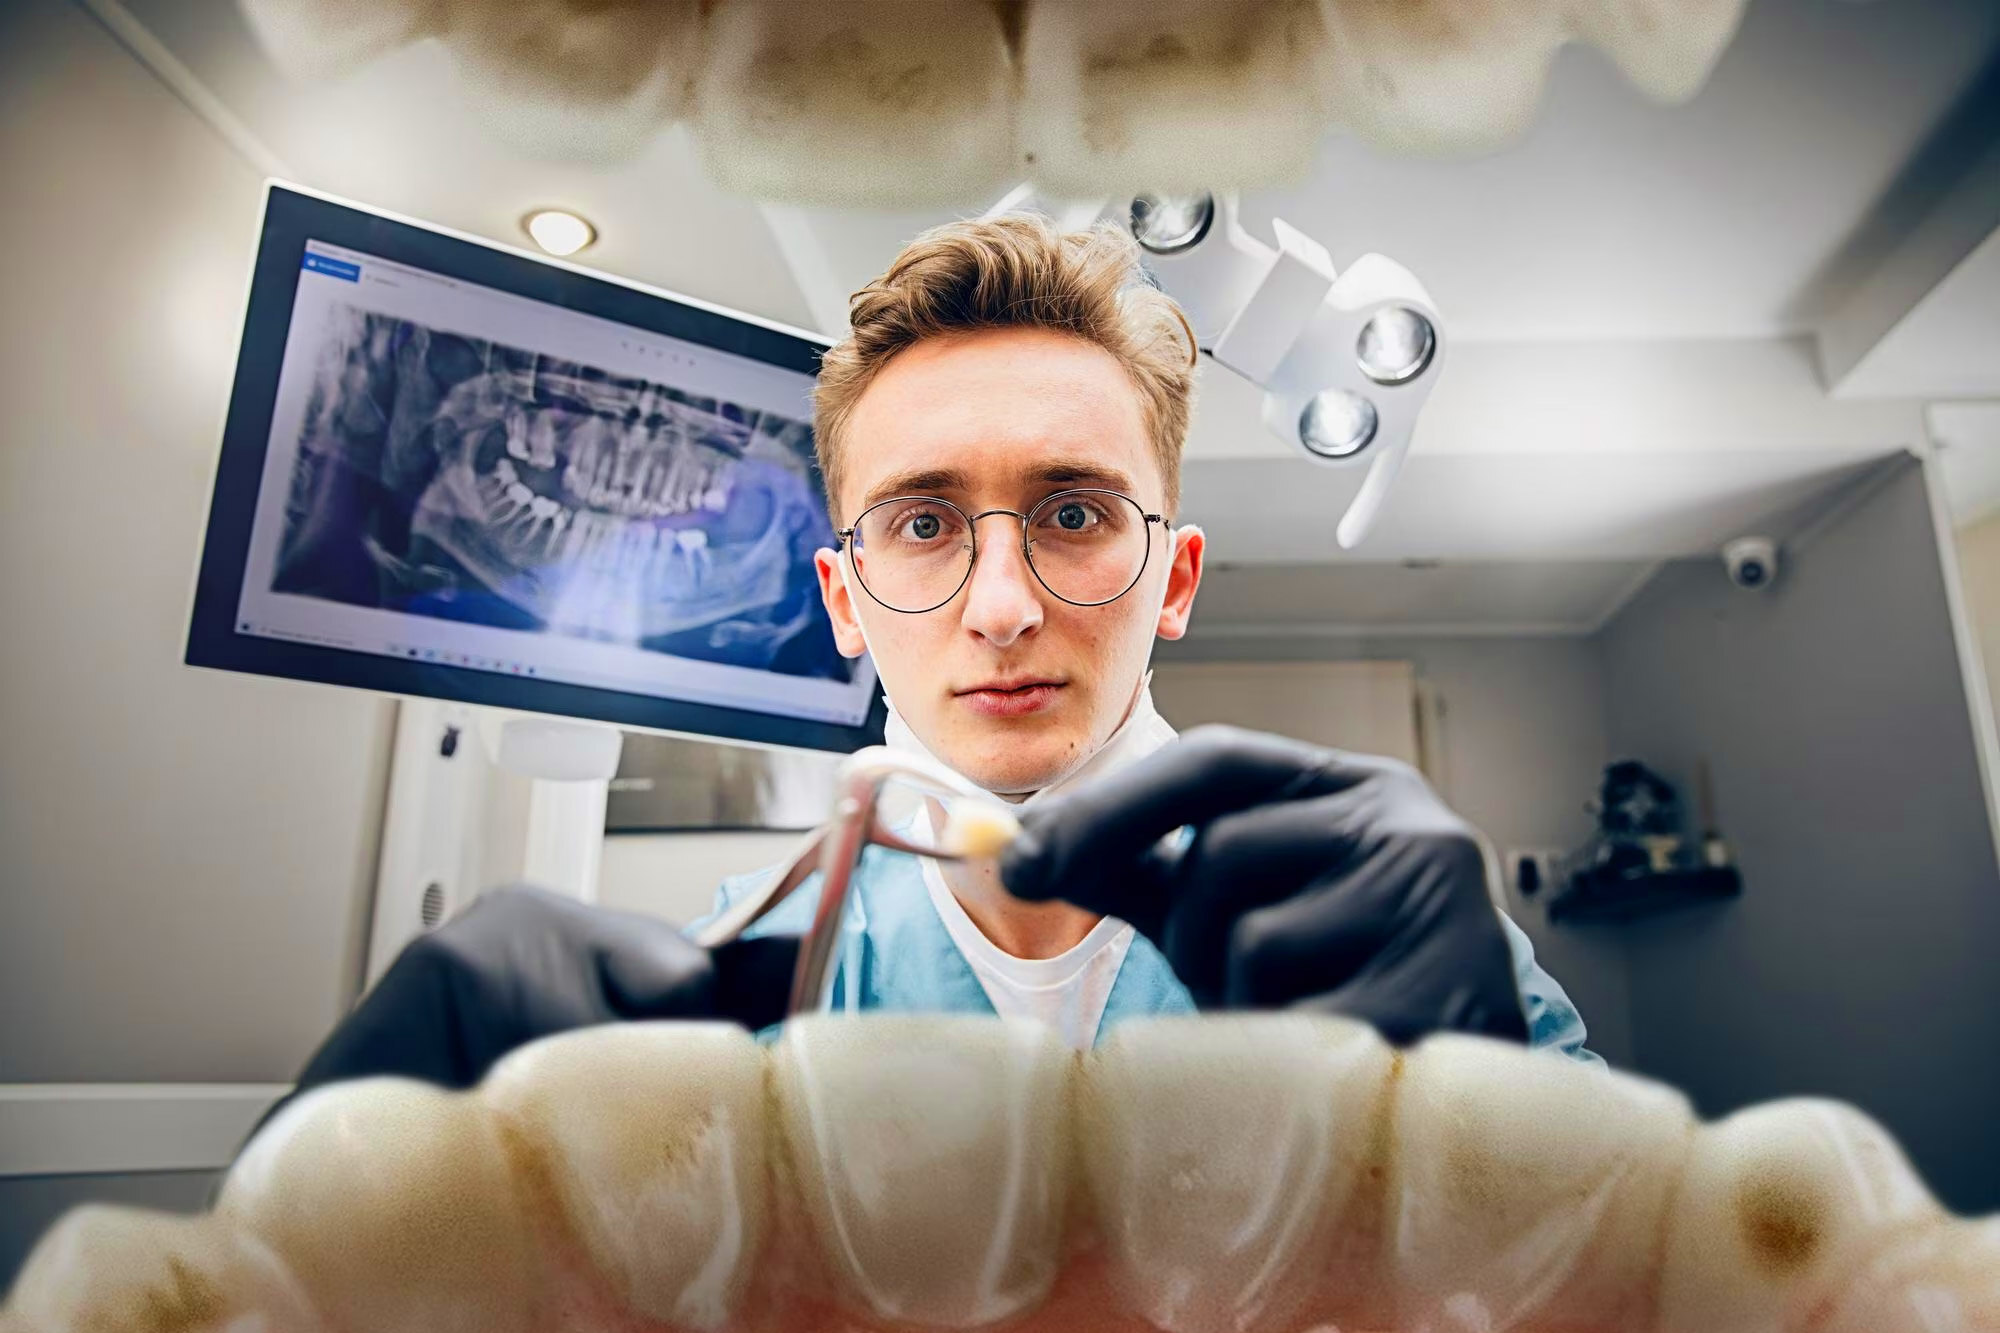 5 неожиданных симптомов, которые говорят о серьезных проблемах: стоматолог рассказал, что можно узнать, заглянув в рот